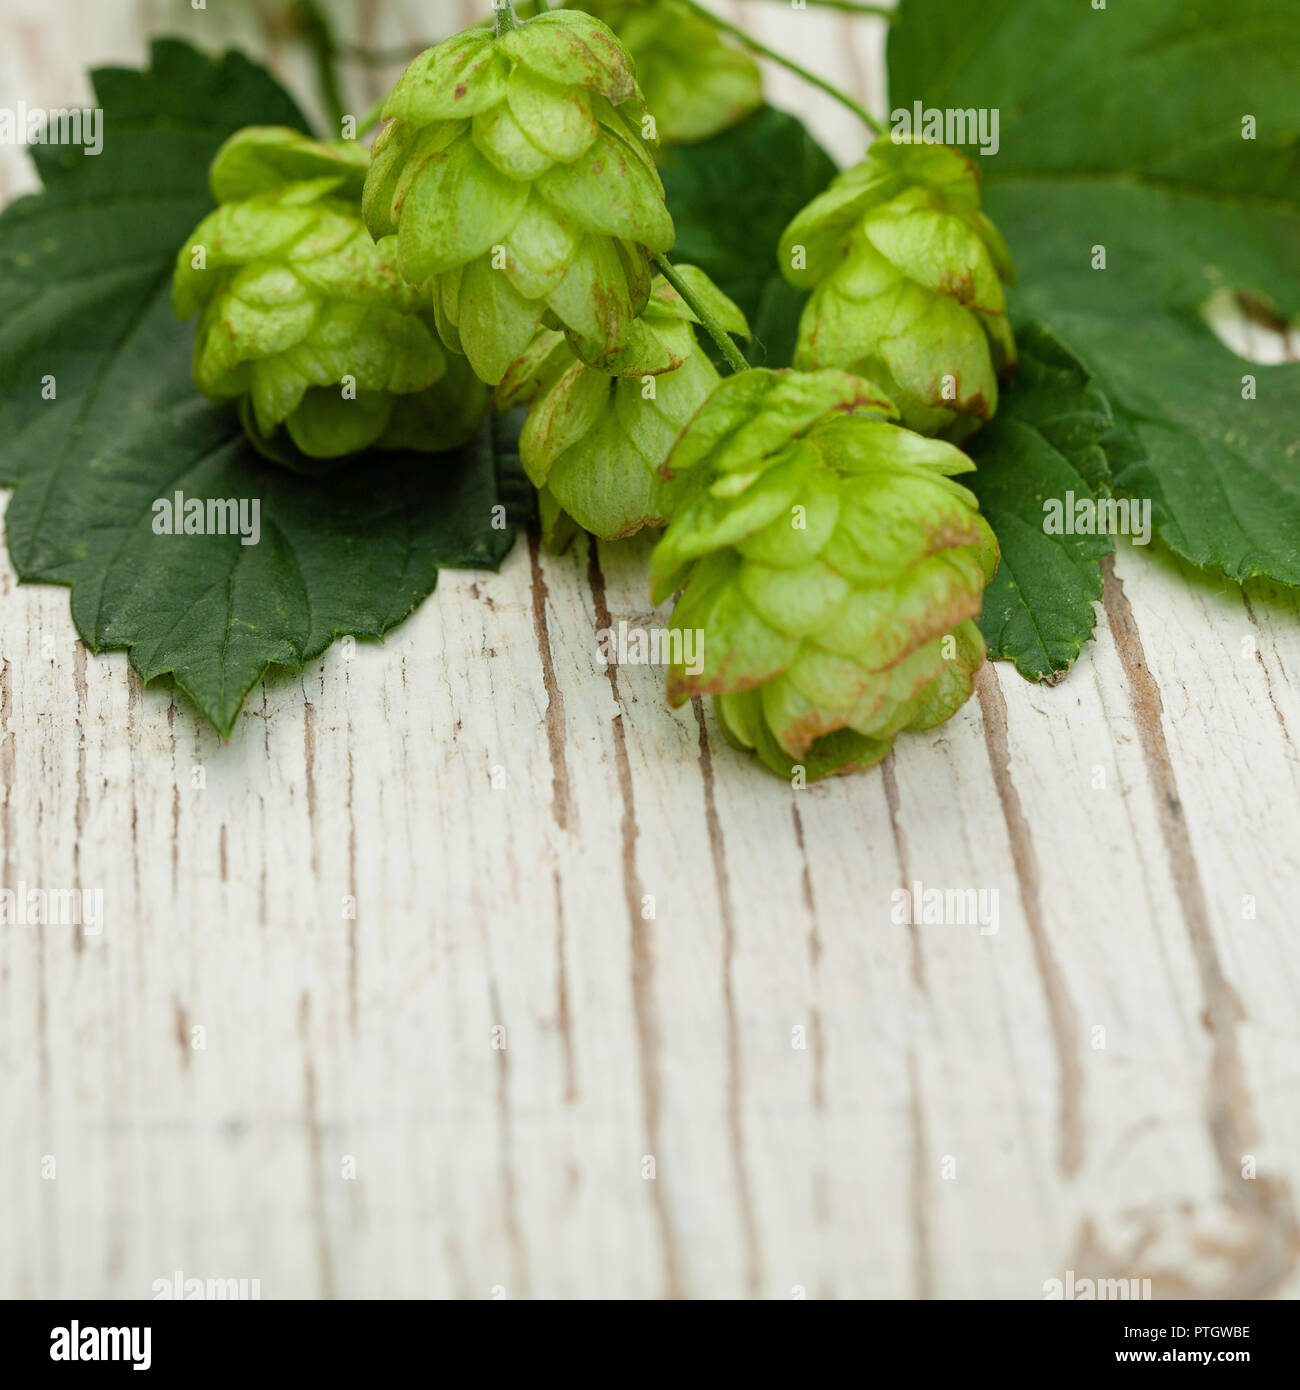 Bier Hopfen Pflanze closeup auf weißen Holz- Hintergrund Stockfotografie -  Alamy